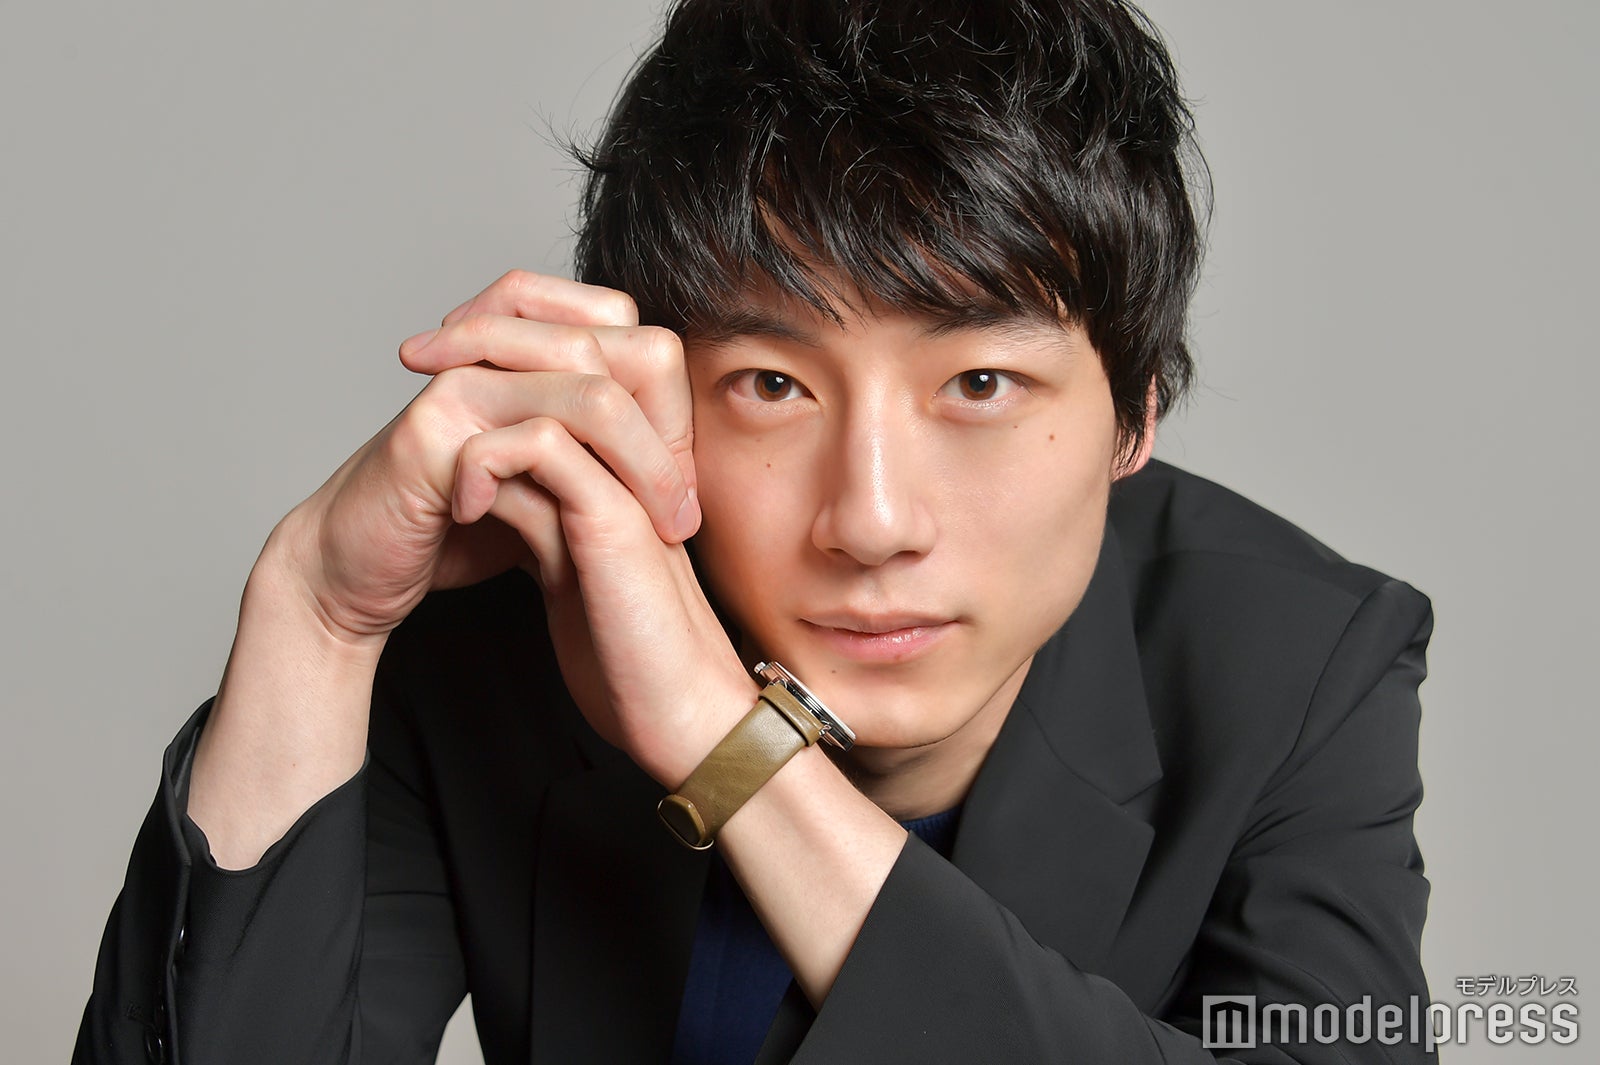 坂口健太郎 俳優デビューから4年 わがままになった その意味は モデルプレスインタビュー モデルプレス